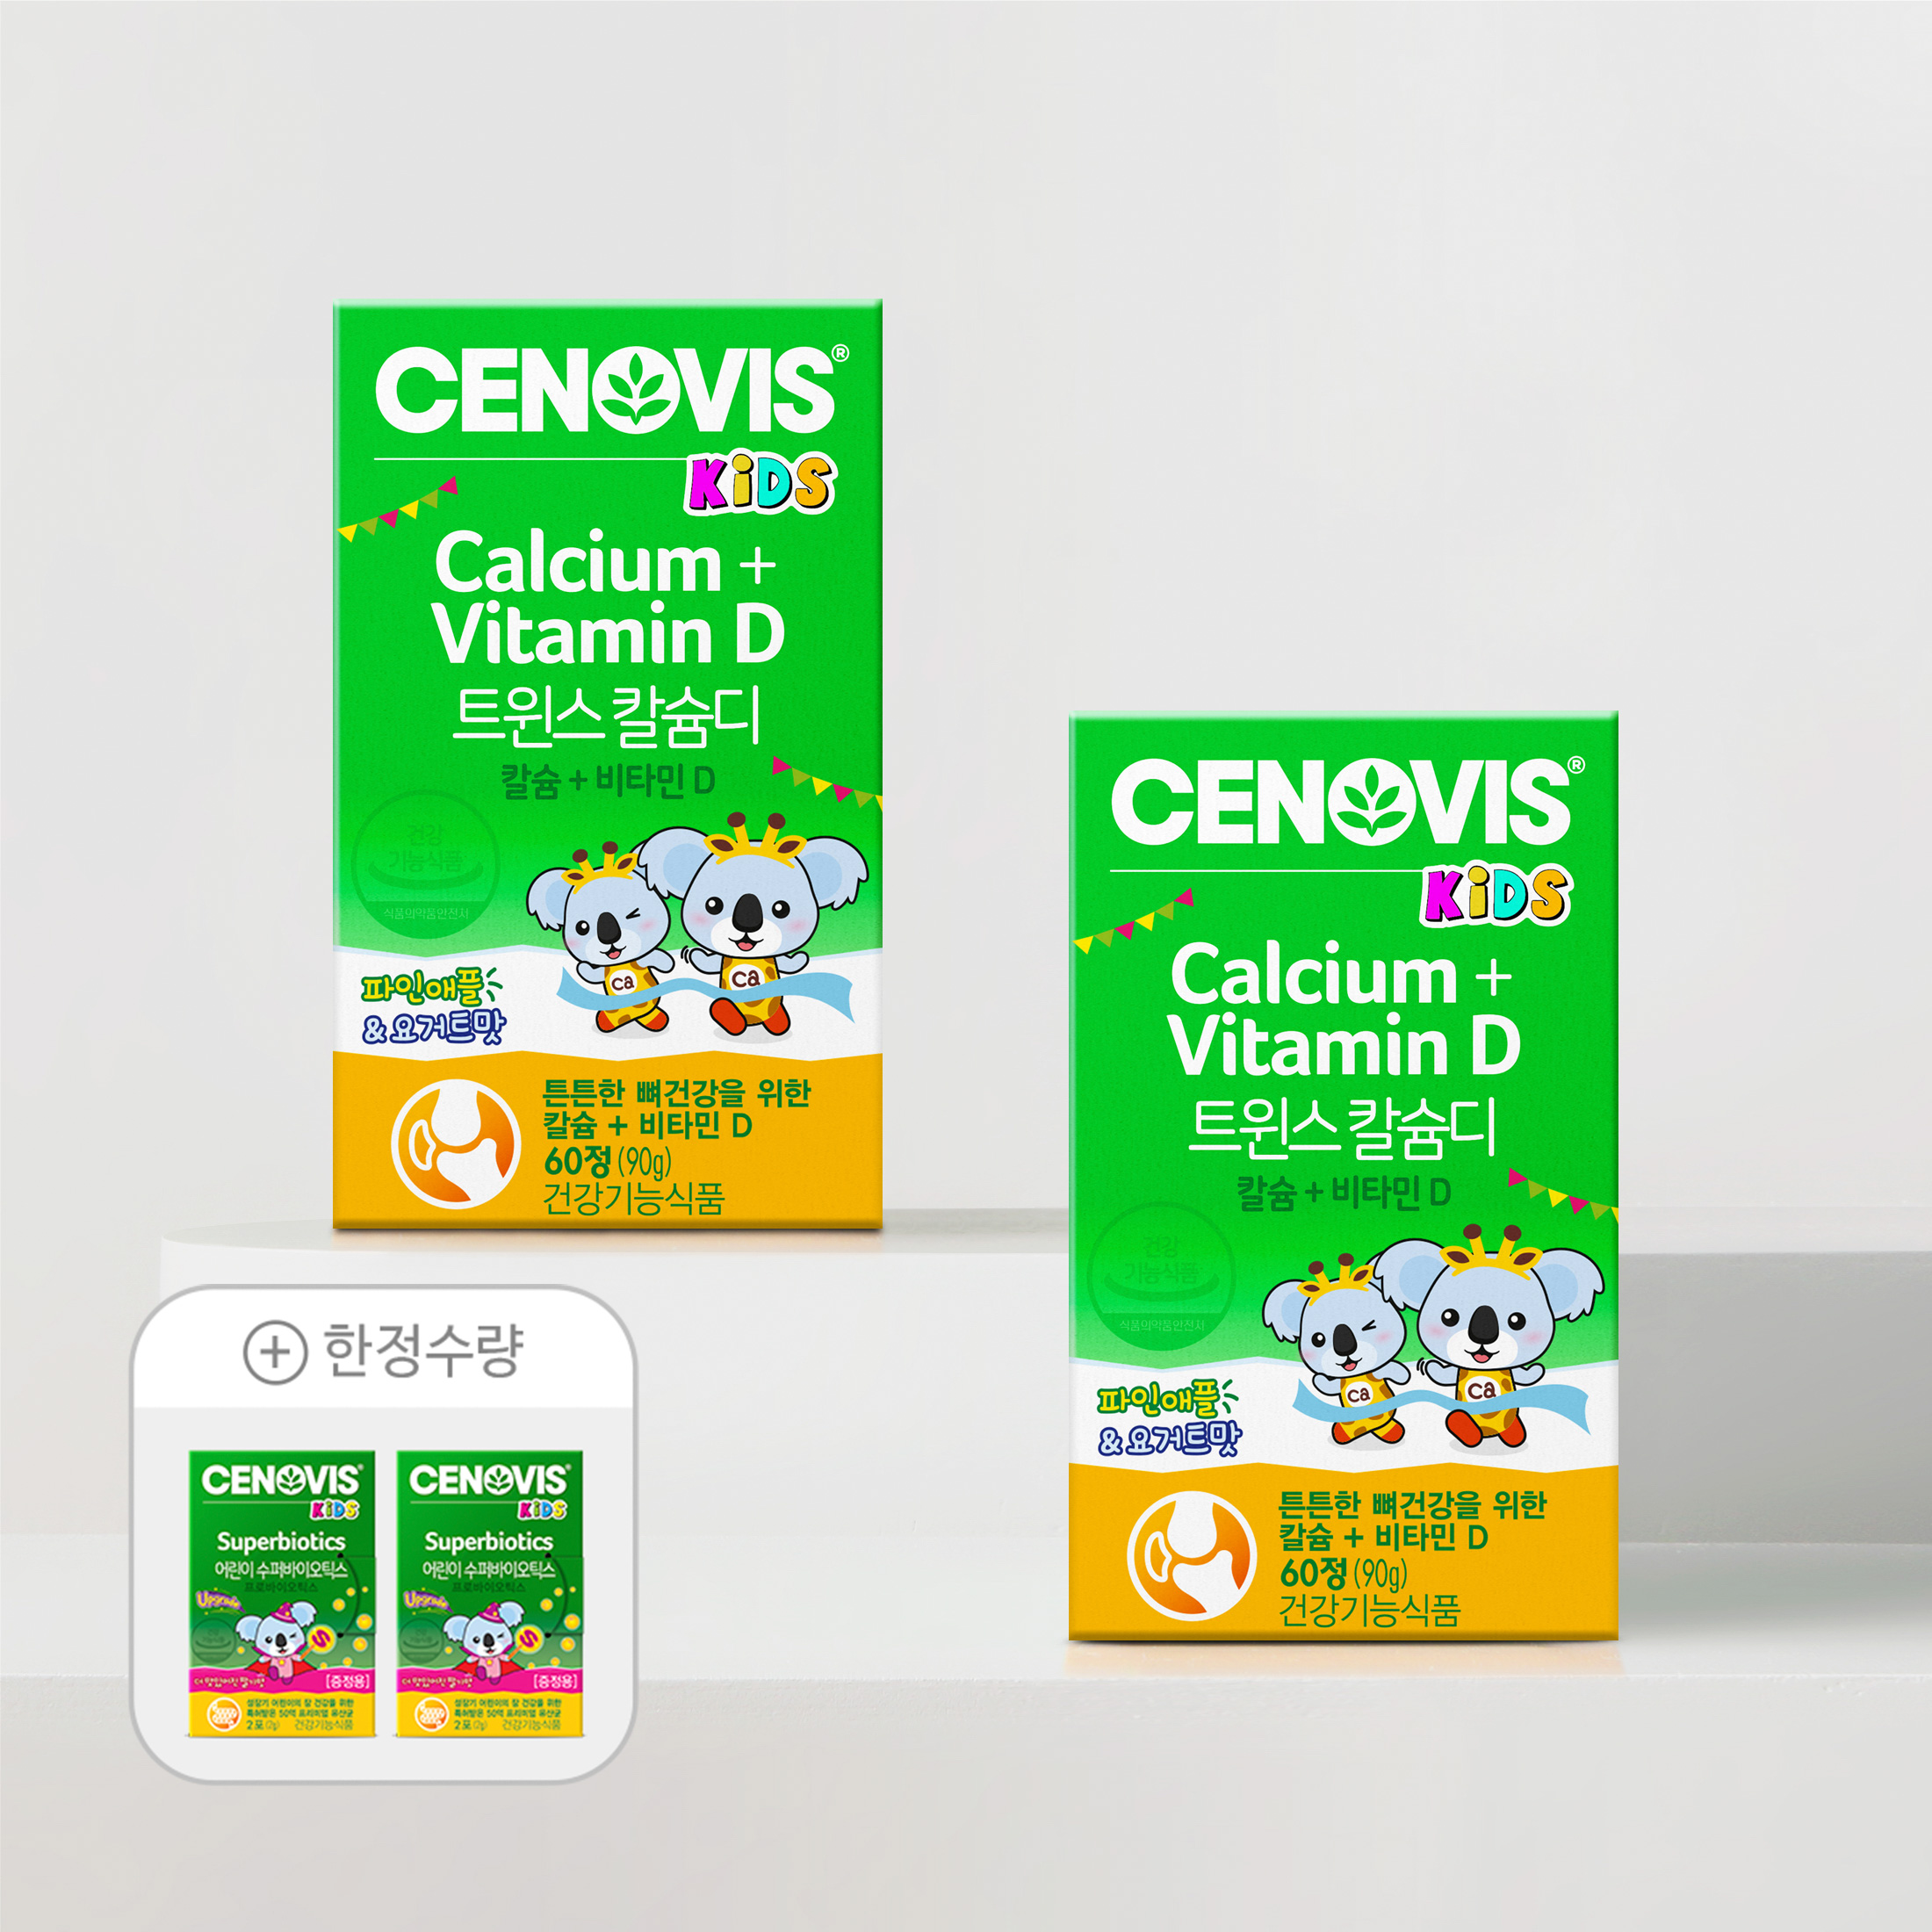 트윈스 칼슘D 2통세트 + 한정수량 사은품 증정!